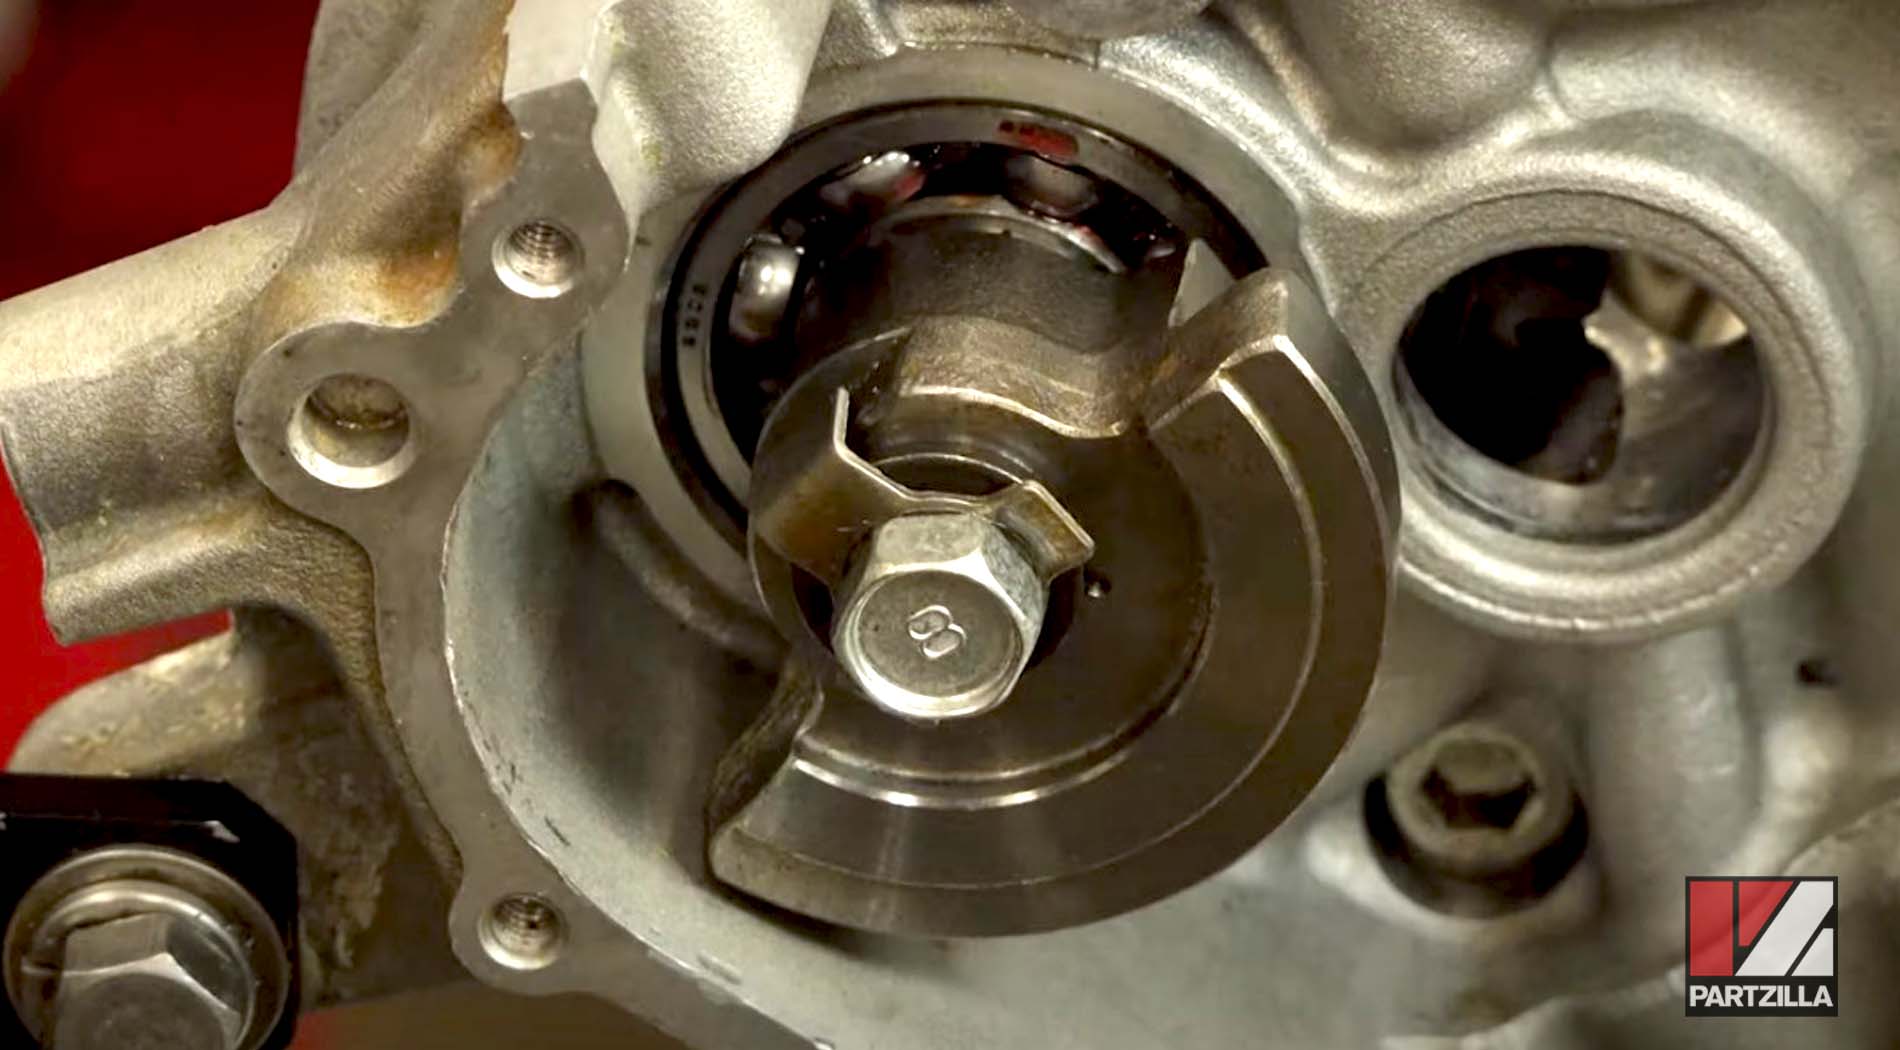 Yamaha YXZ1000R side-by-side engine rebuild turbo upgrade